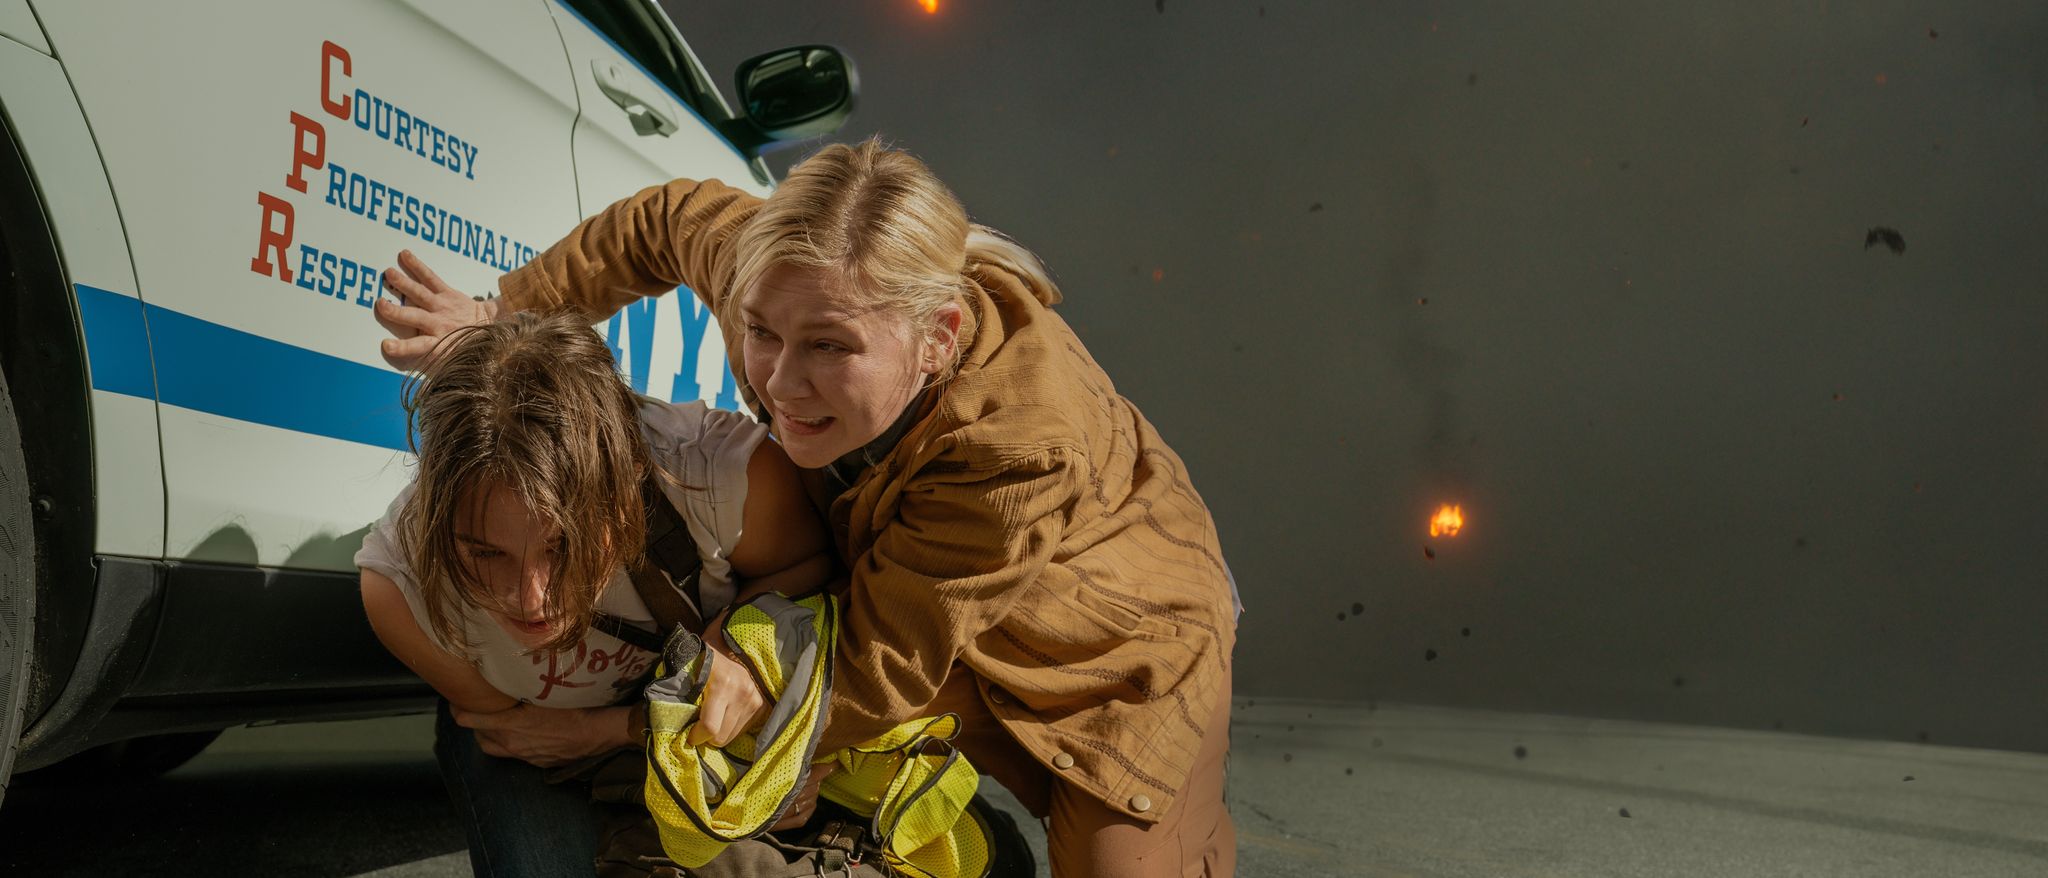  I «Civil War» gjør Kirsten Dunst sin sterkeste rolleprestasjon